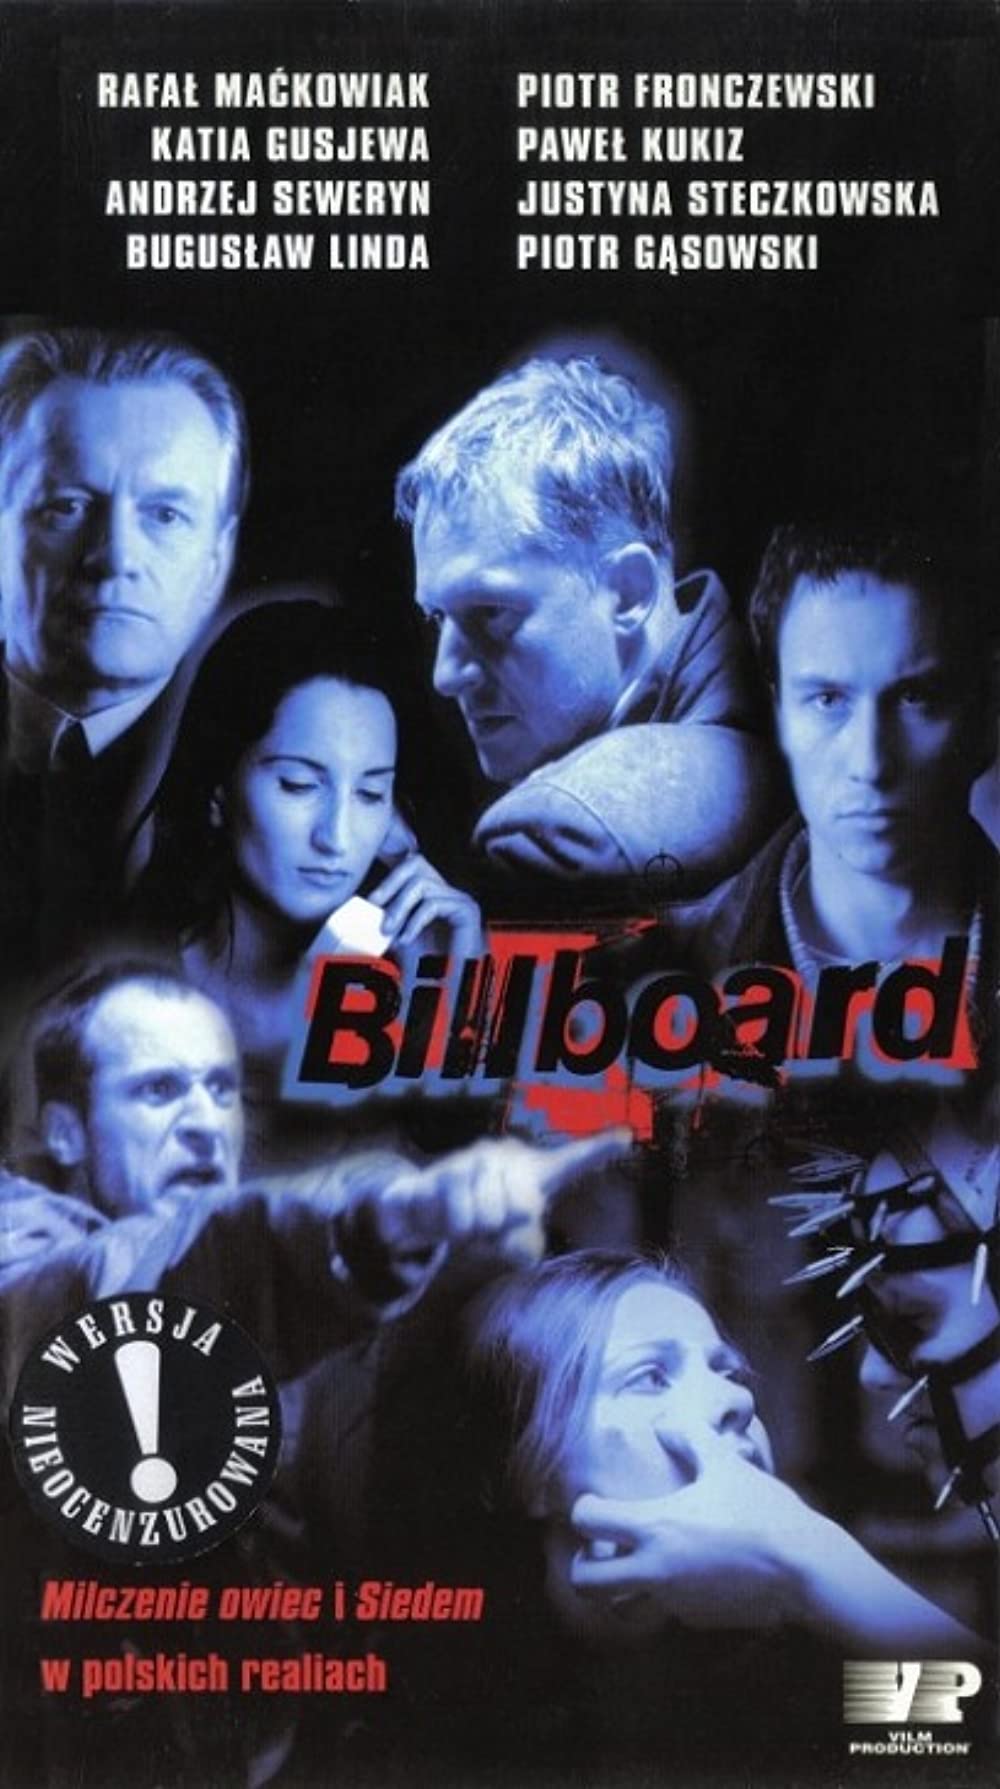 Billboard Movie Download - Billboard Movie Review